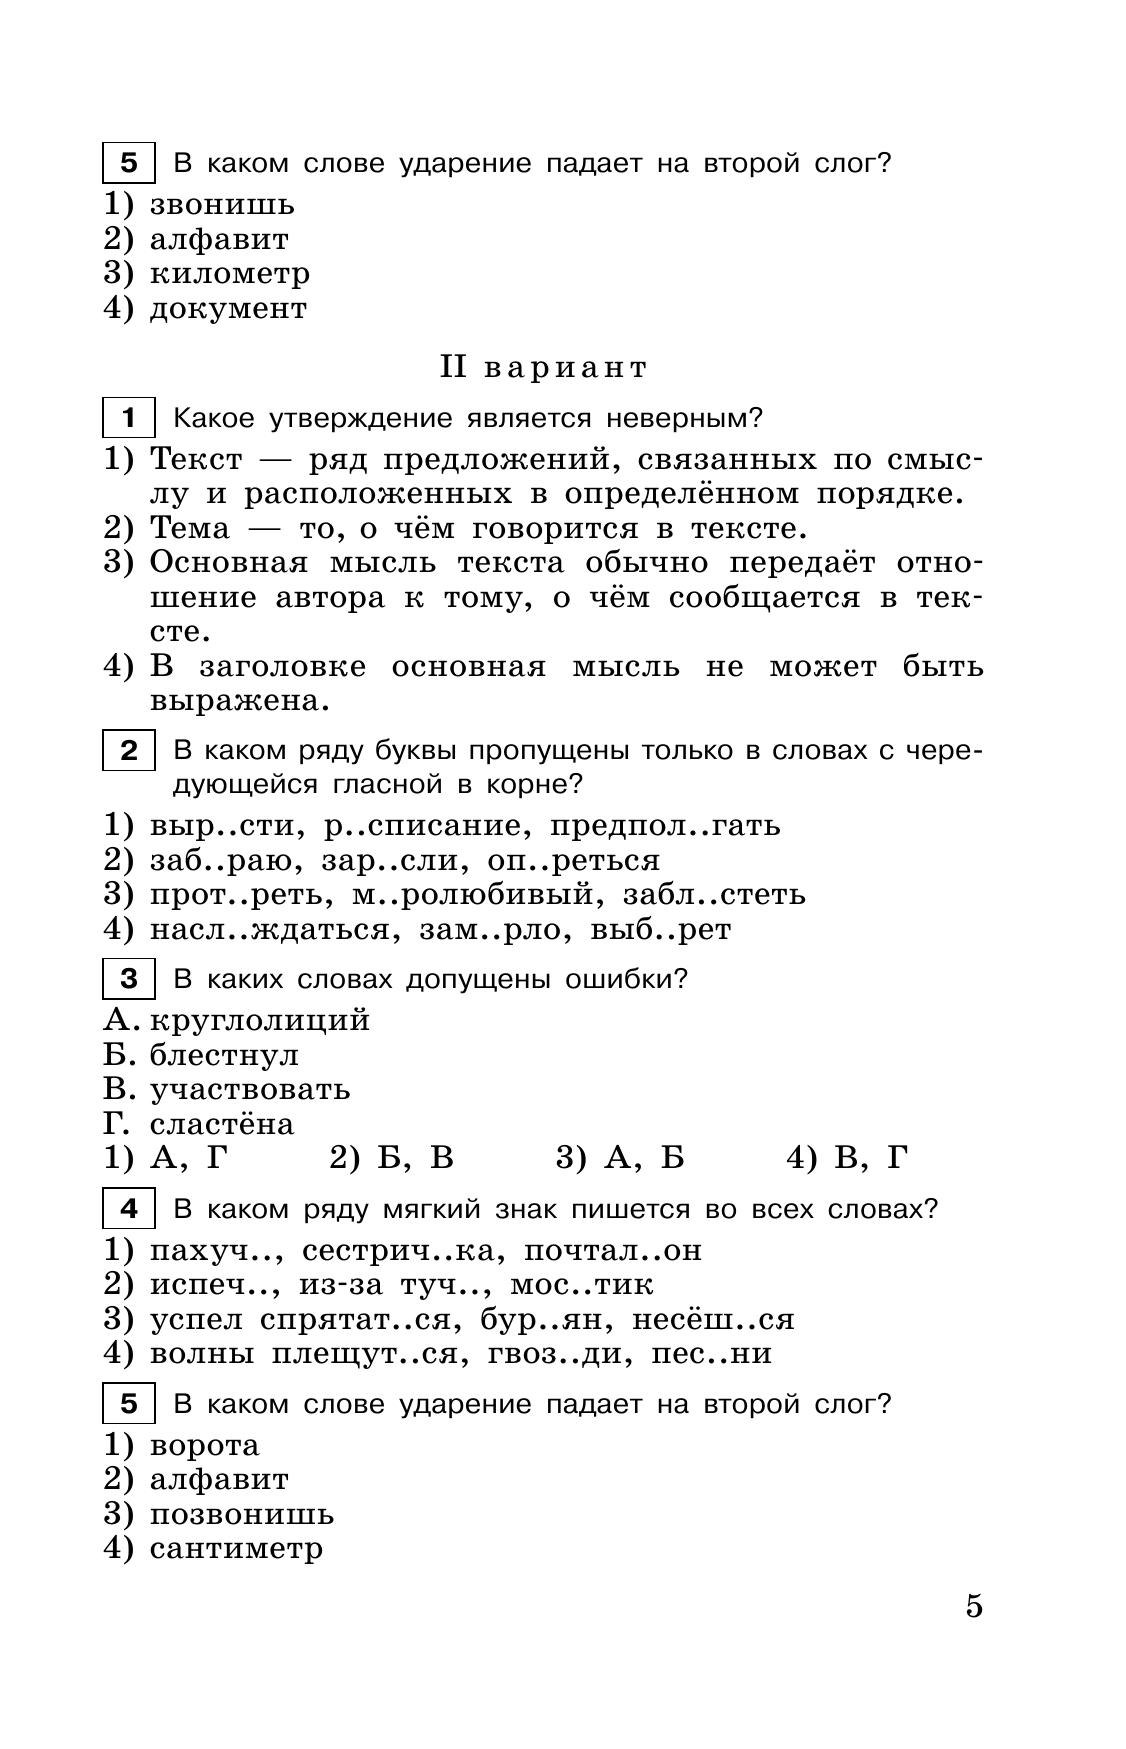 Тестовые задания по русскому языку. 6 класс 11